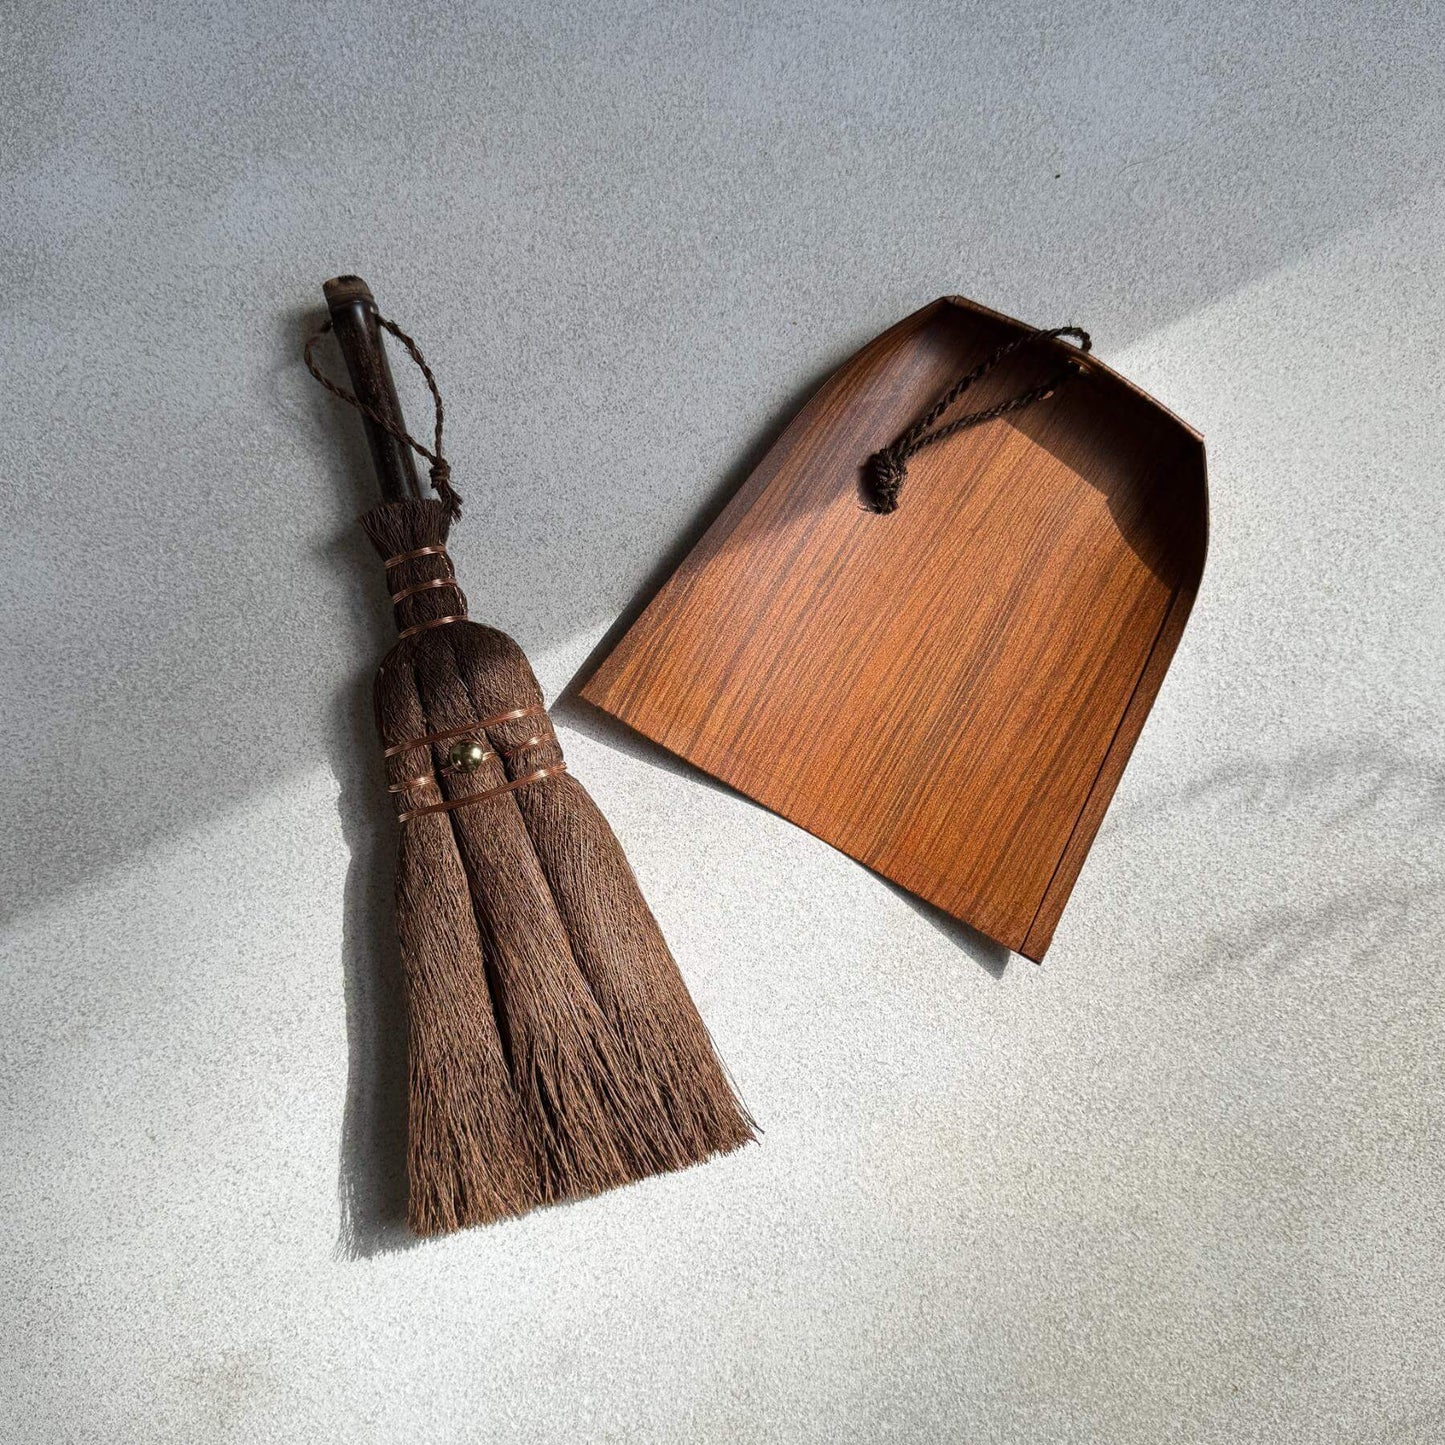 Japanese Table Broom